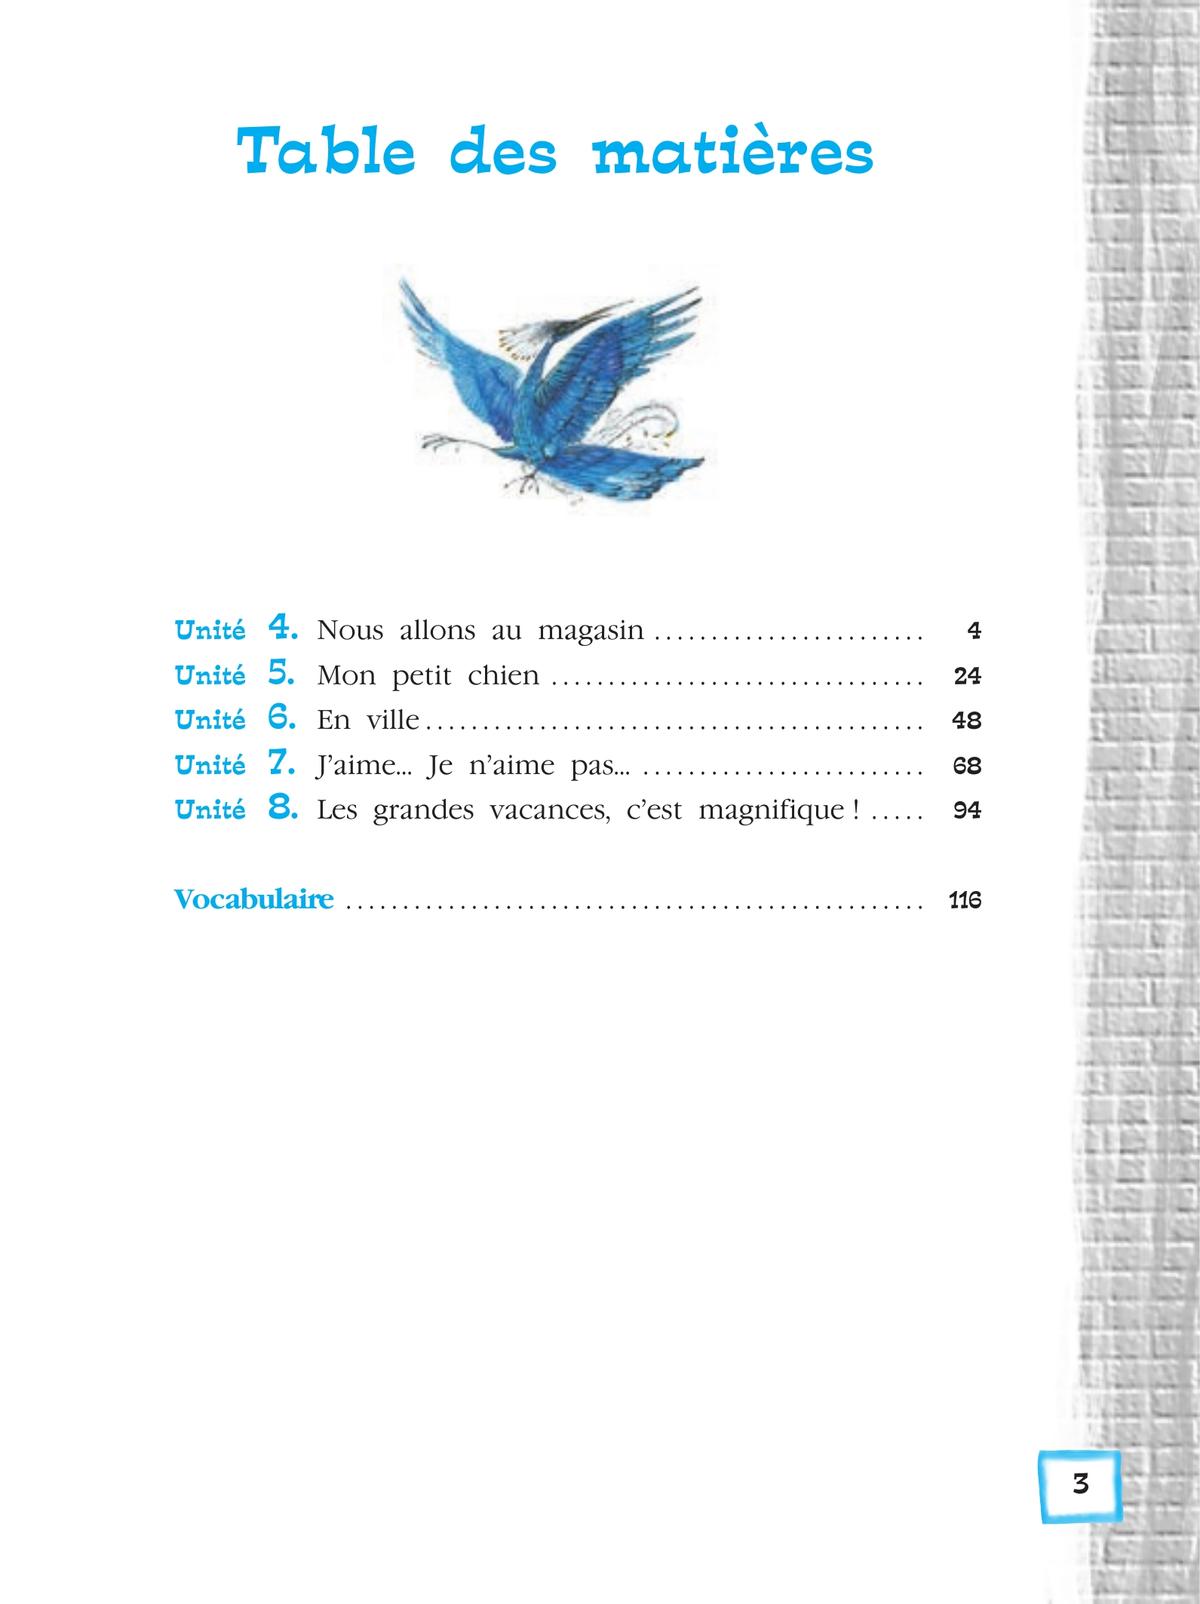 Синяя птица учебник 5 класс 1 часть. Французский Береговская 5 кл. Французский язык 5 класс синяя птица 2 часть ответы. Французский тетрадь э.м.Береговская. 5 Класс / французский язык / l'oiseau bleu Береговская.